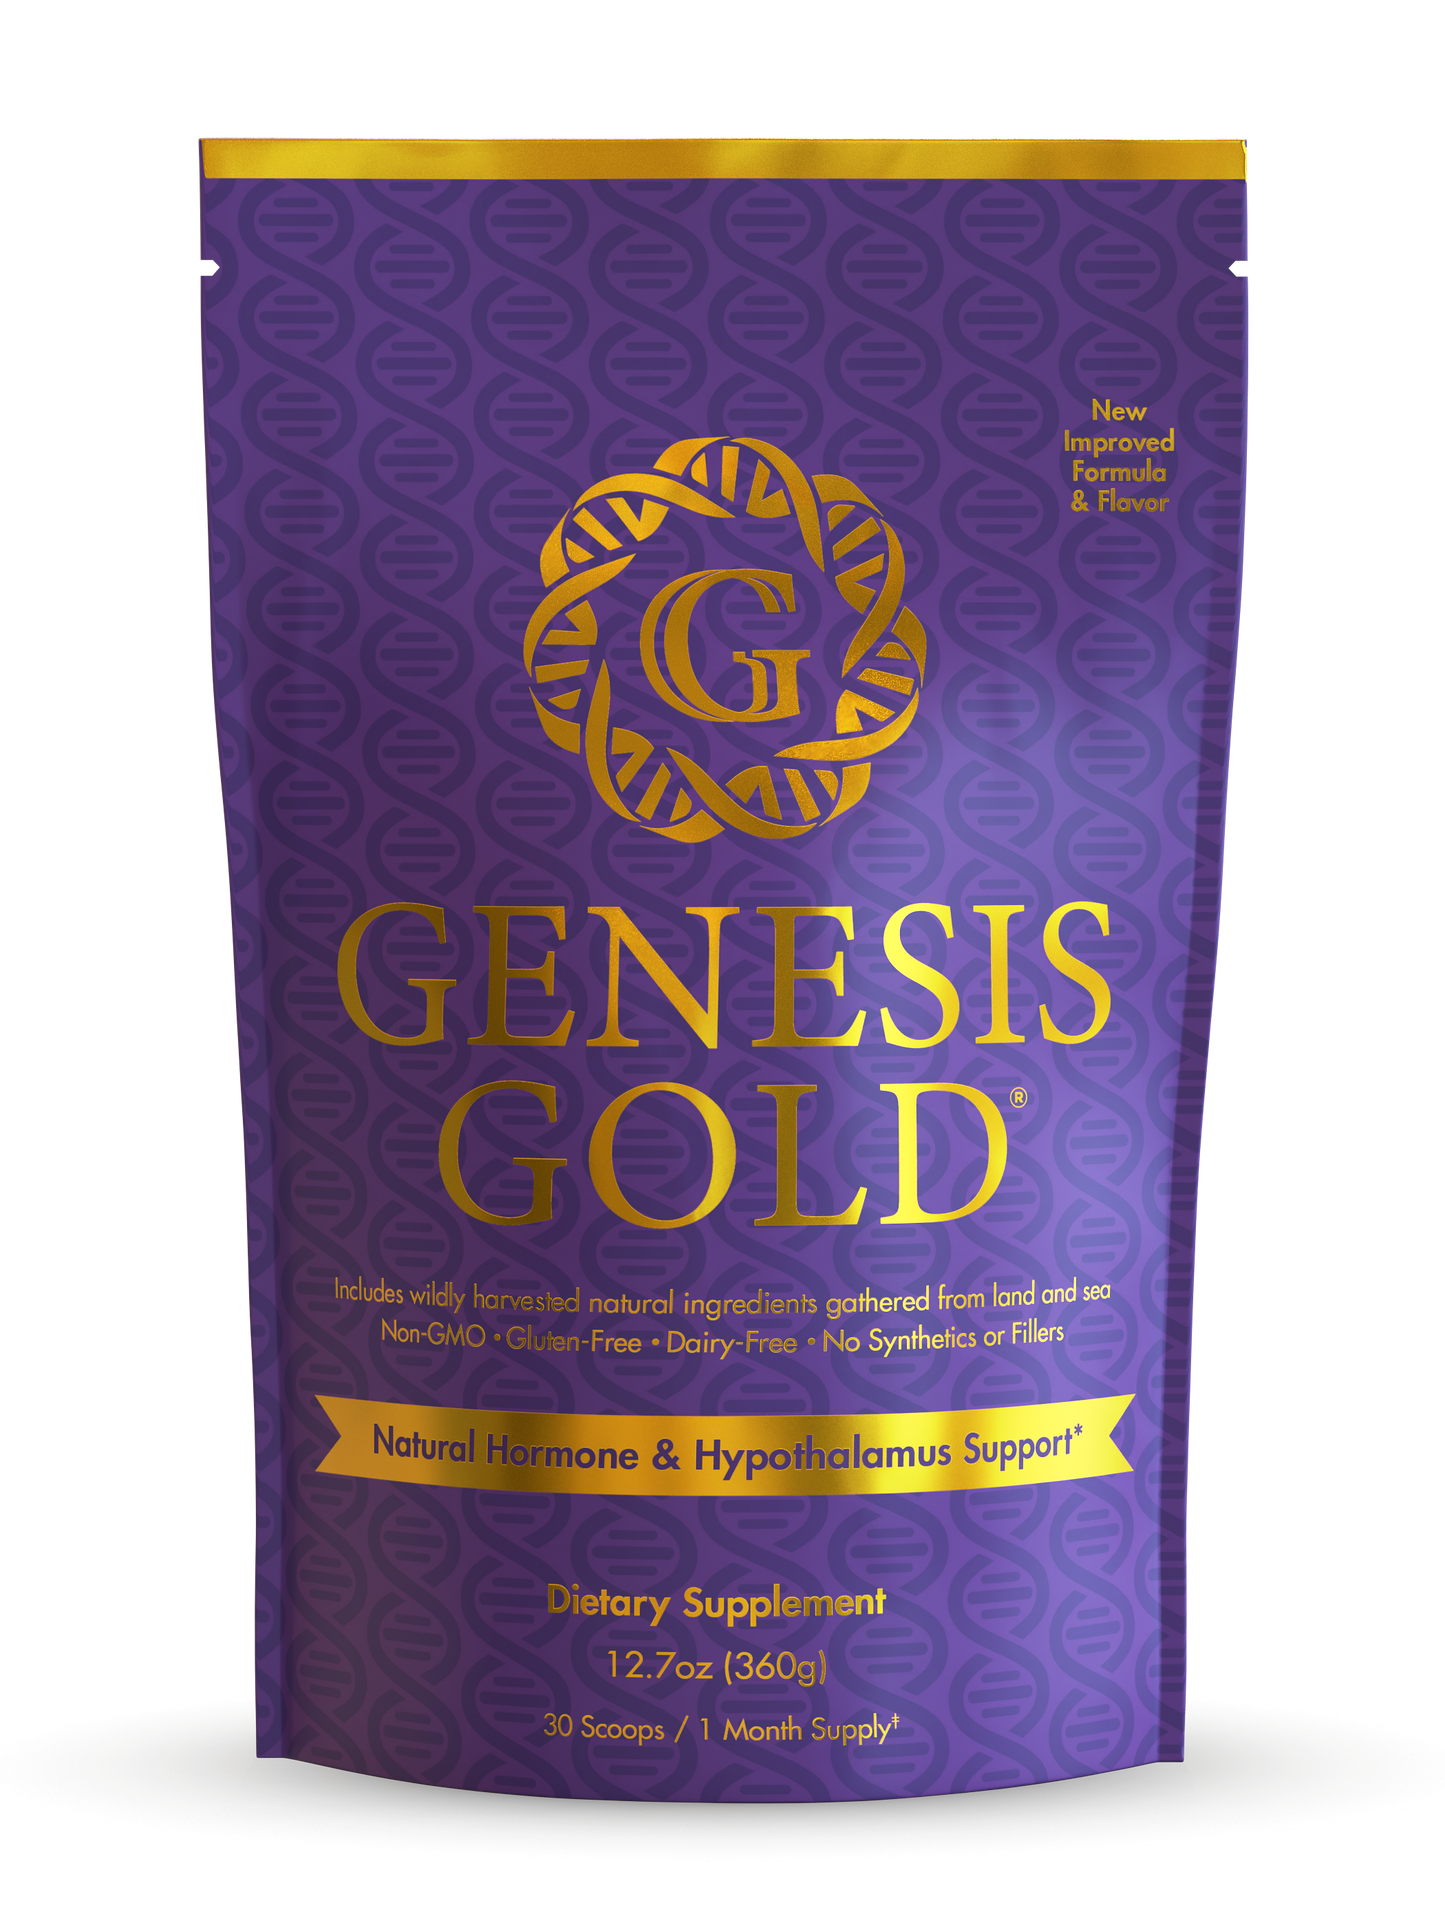 Buy 5 Get 1 Free Genesis Gold®